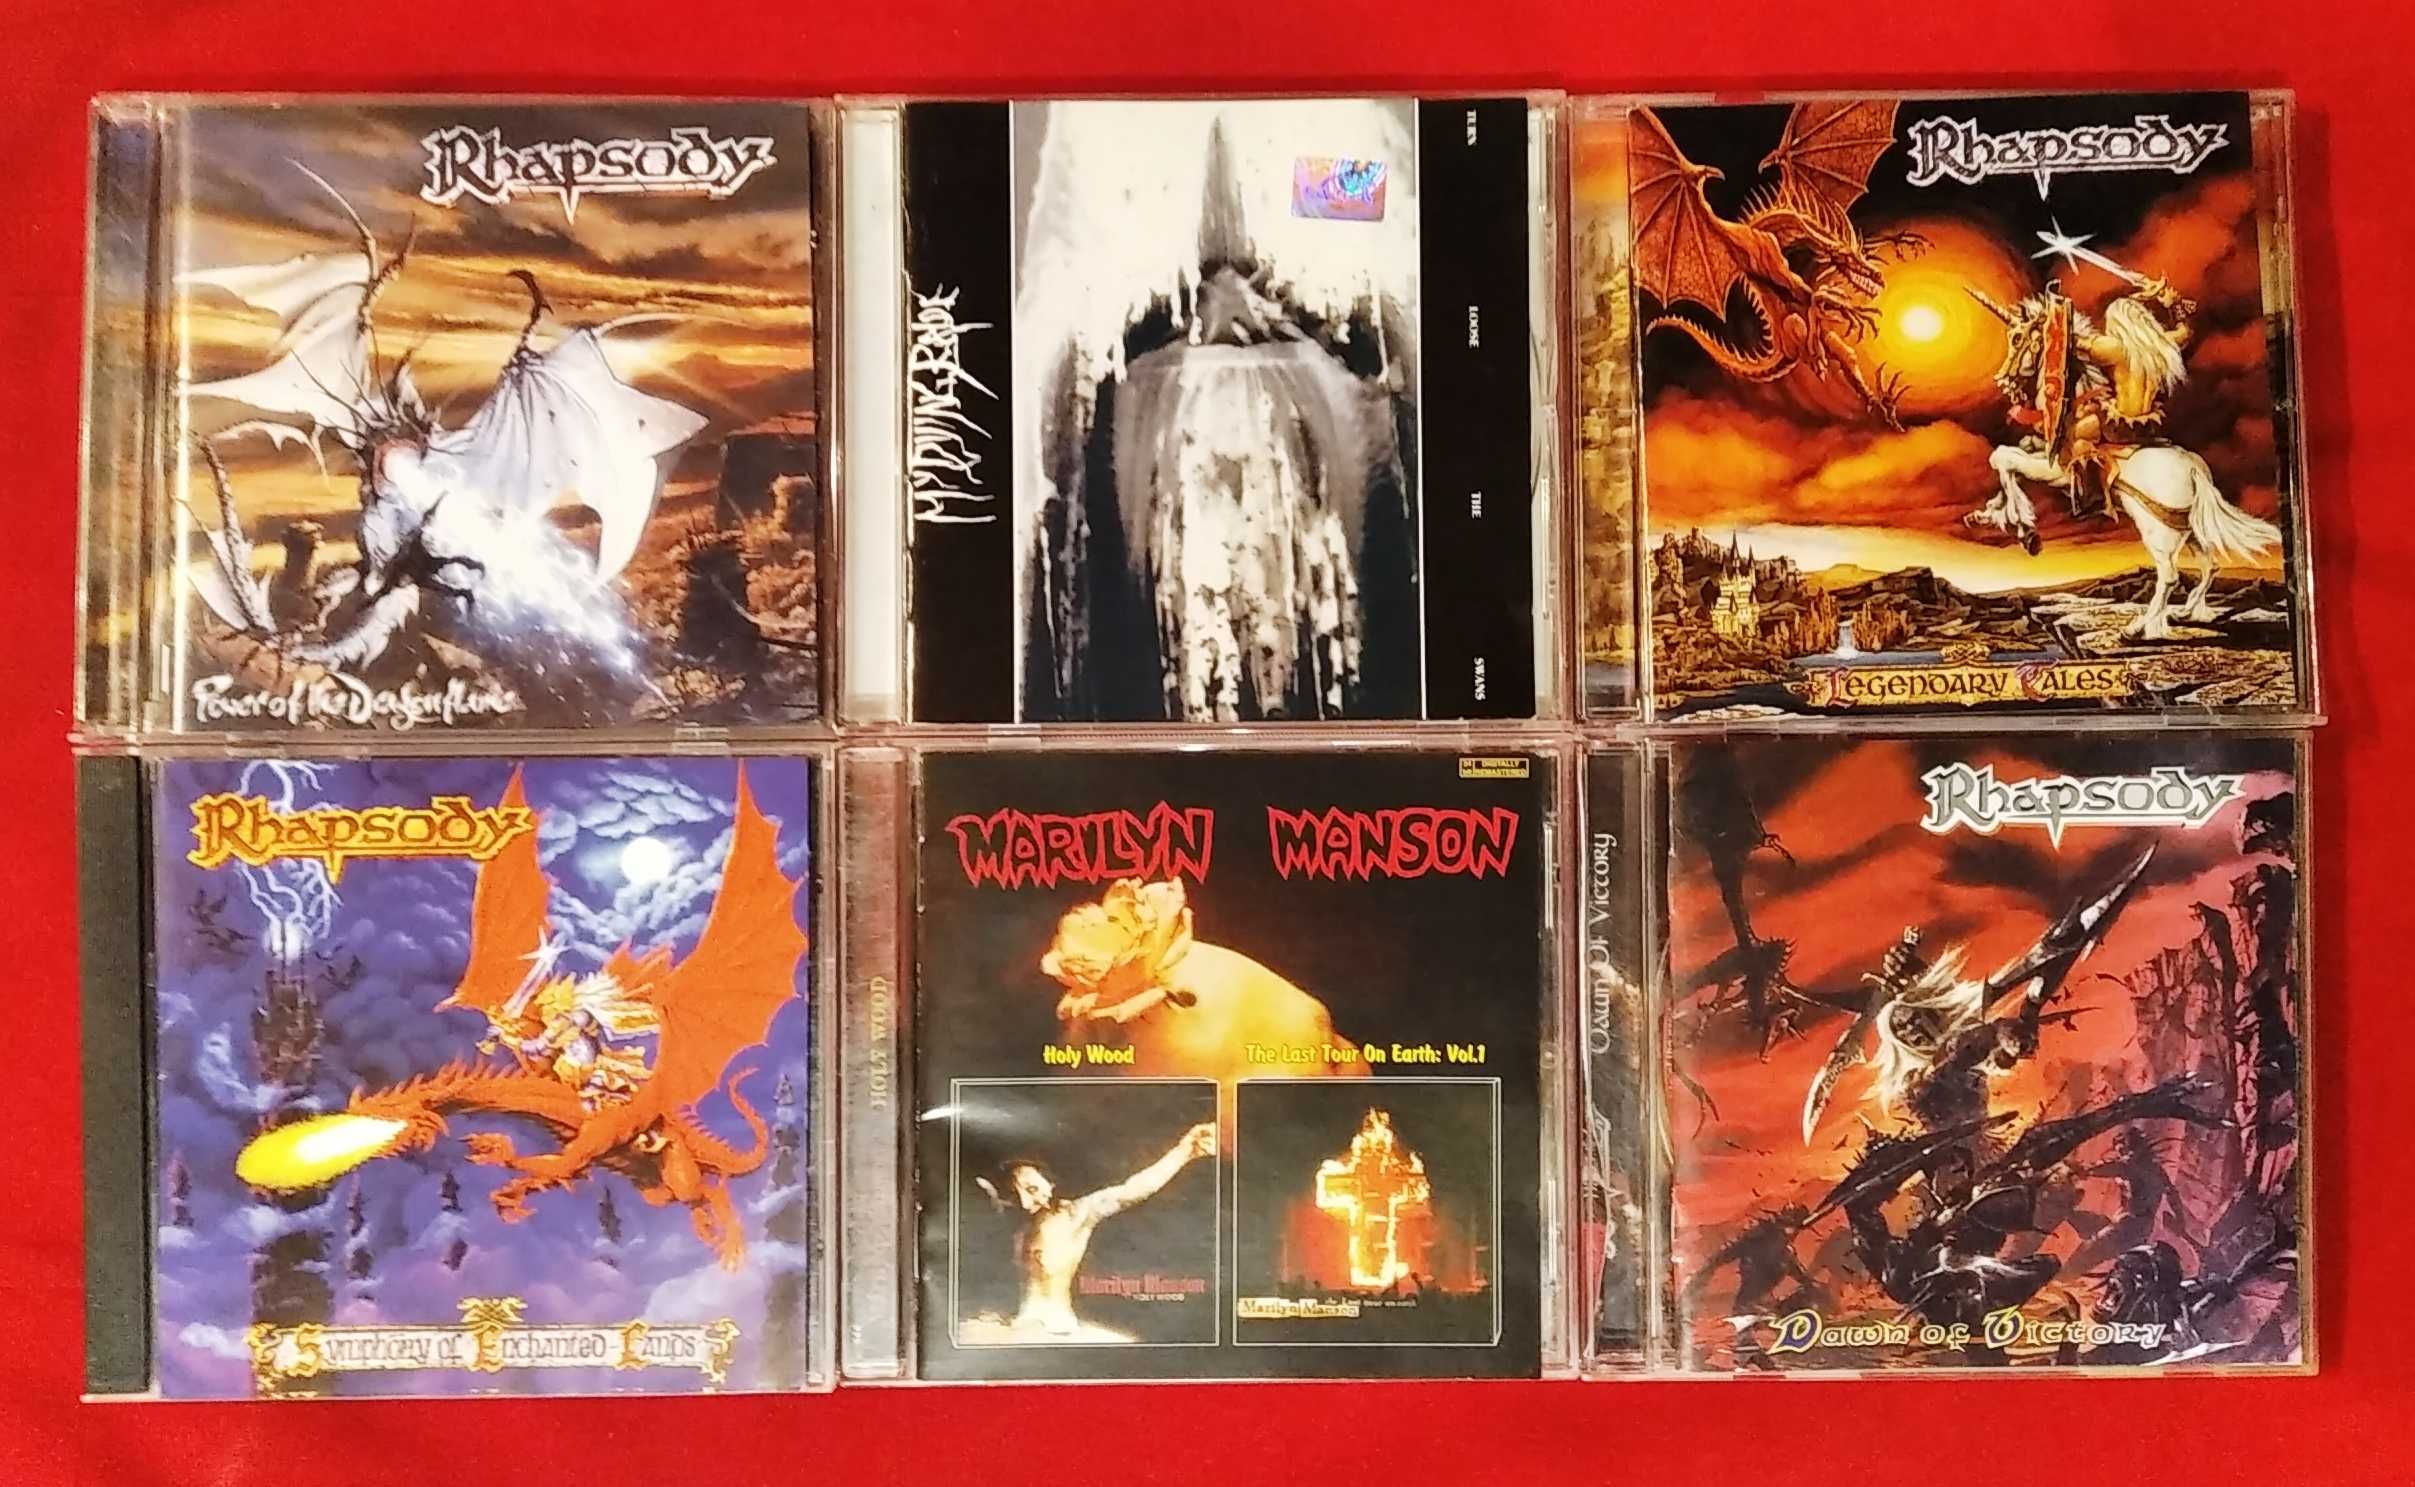 CD - Rhapsody,My Dying Bride